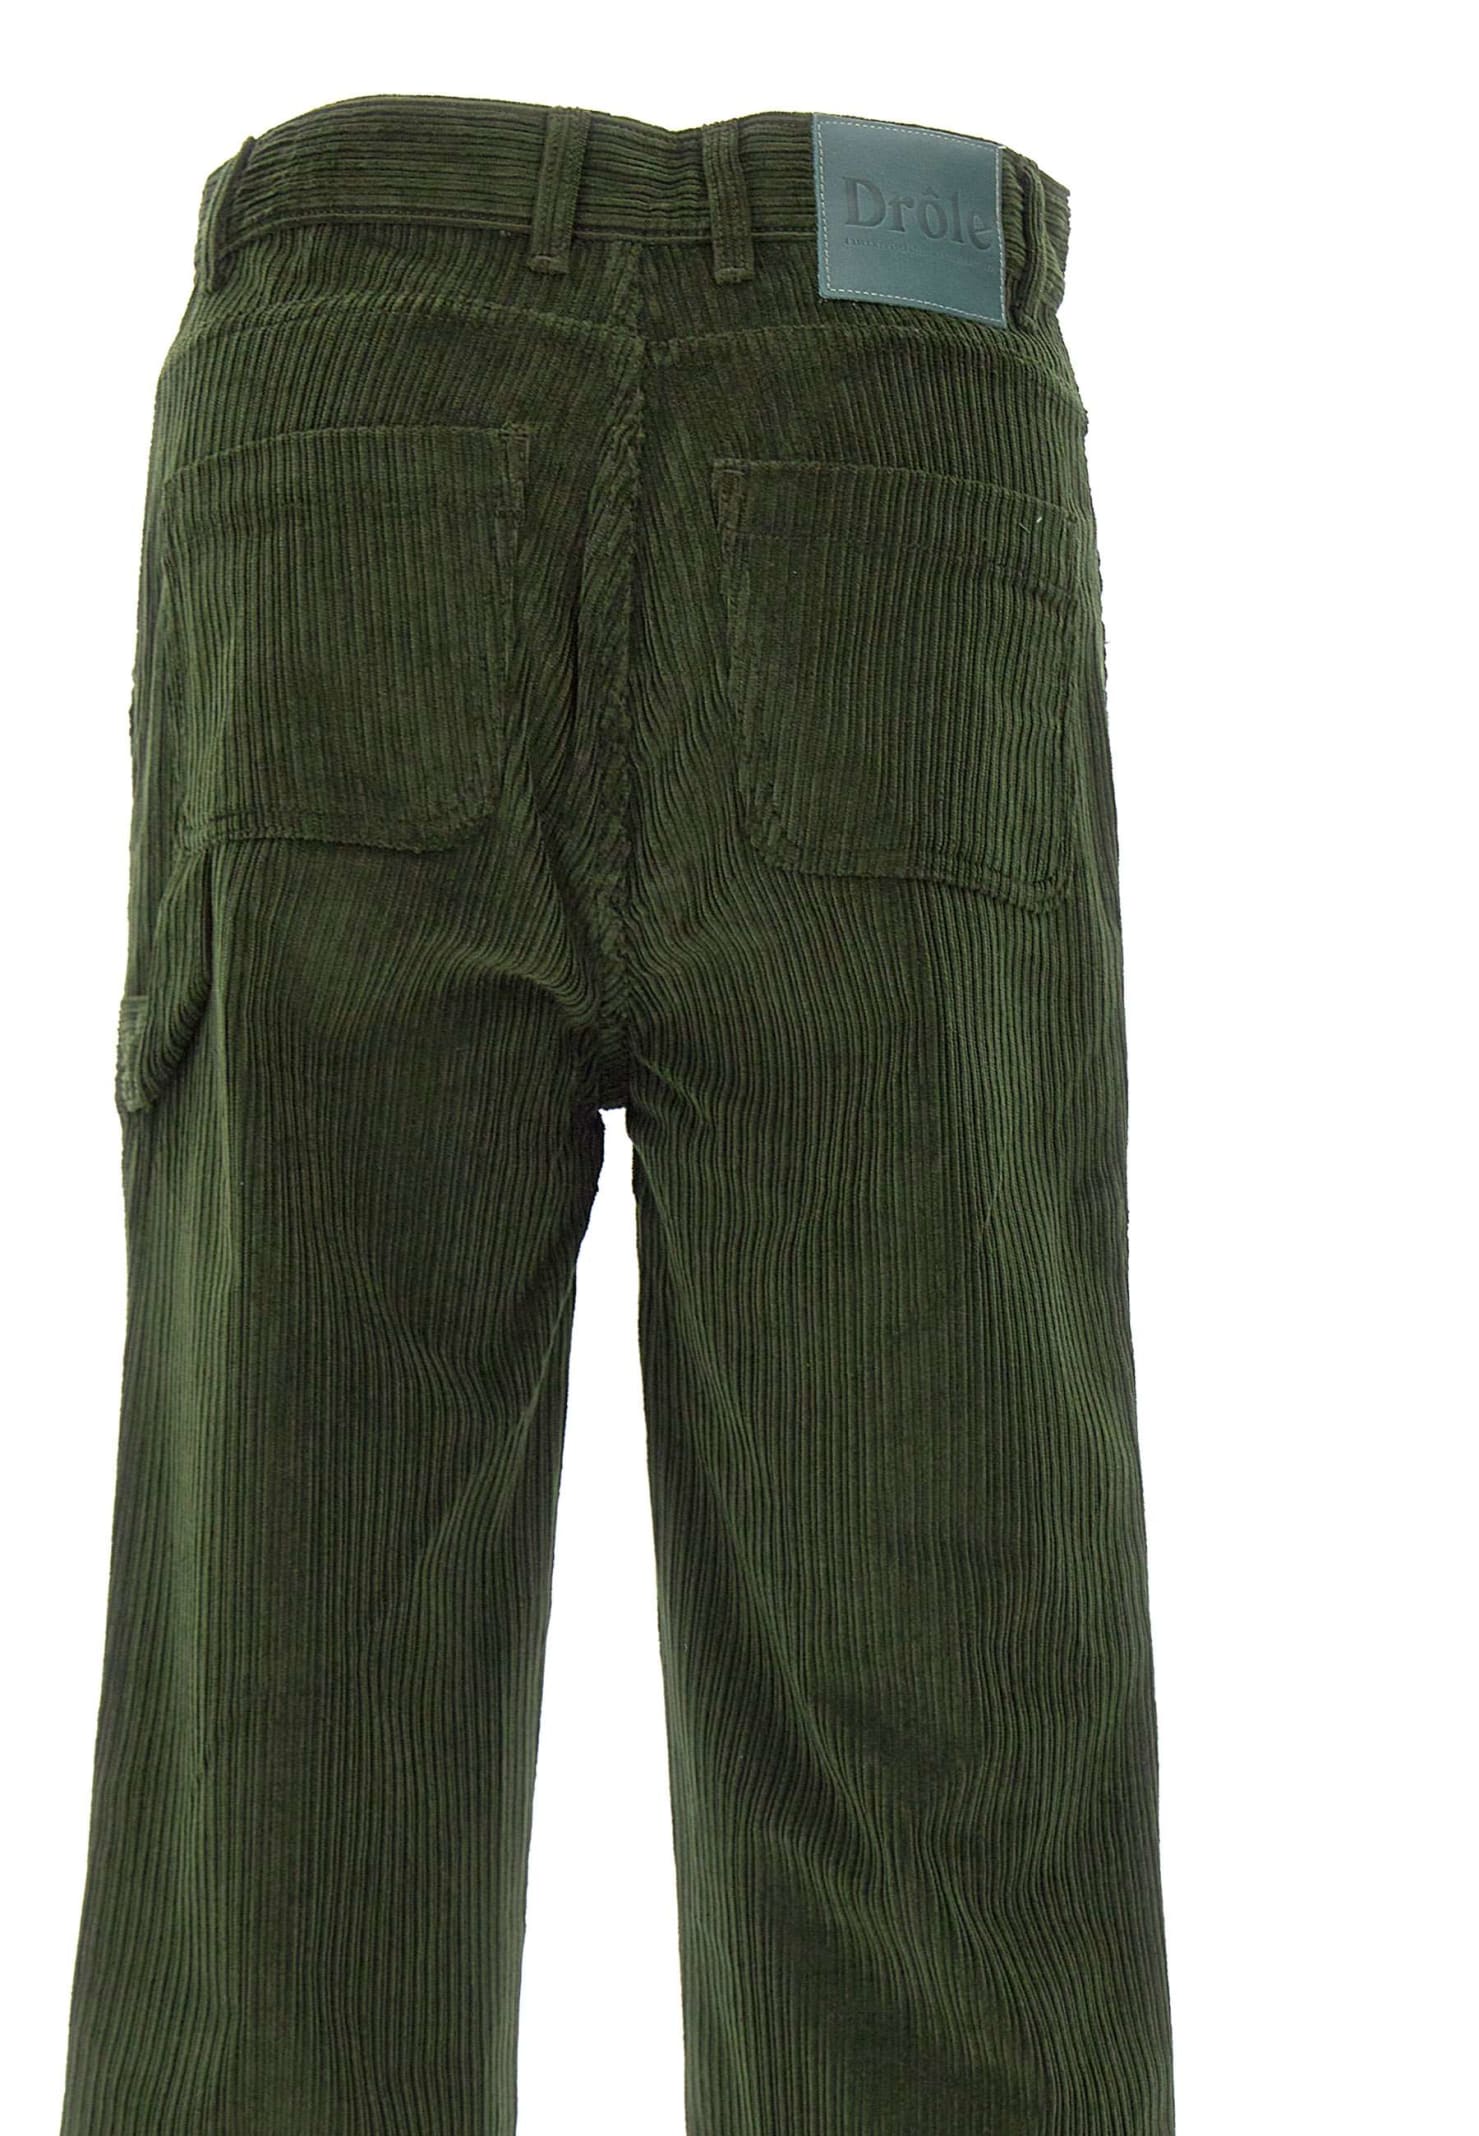 Drôle De Monsieur Corduroy Carpenter Pants In Verde Militare